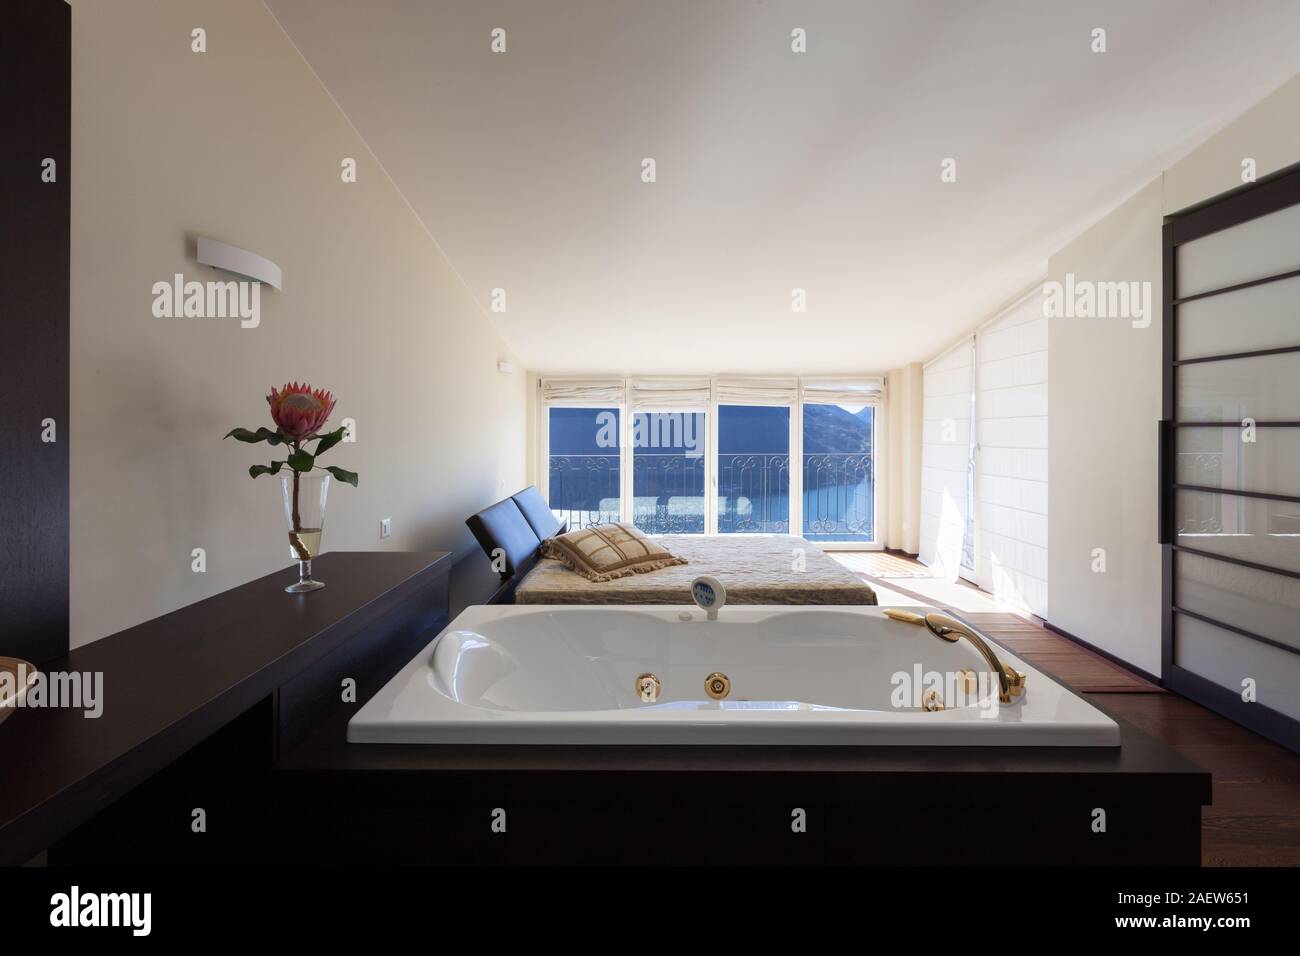 Architektur, moderne Haus Interieur, Bett Zimmer mit Badewanne für zwei Personen. Offener Raum Stockfoto